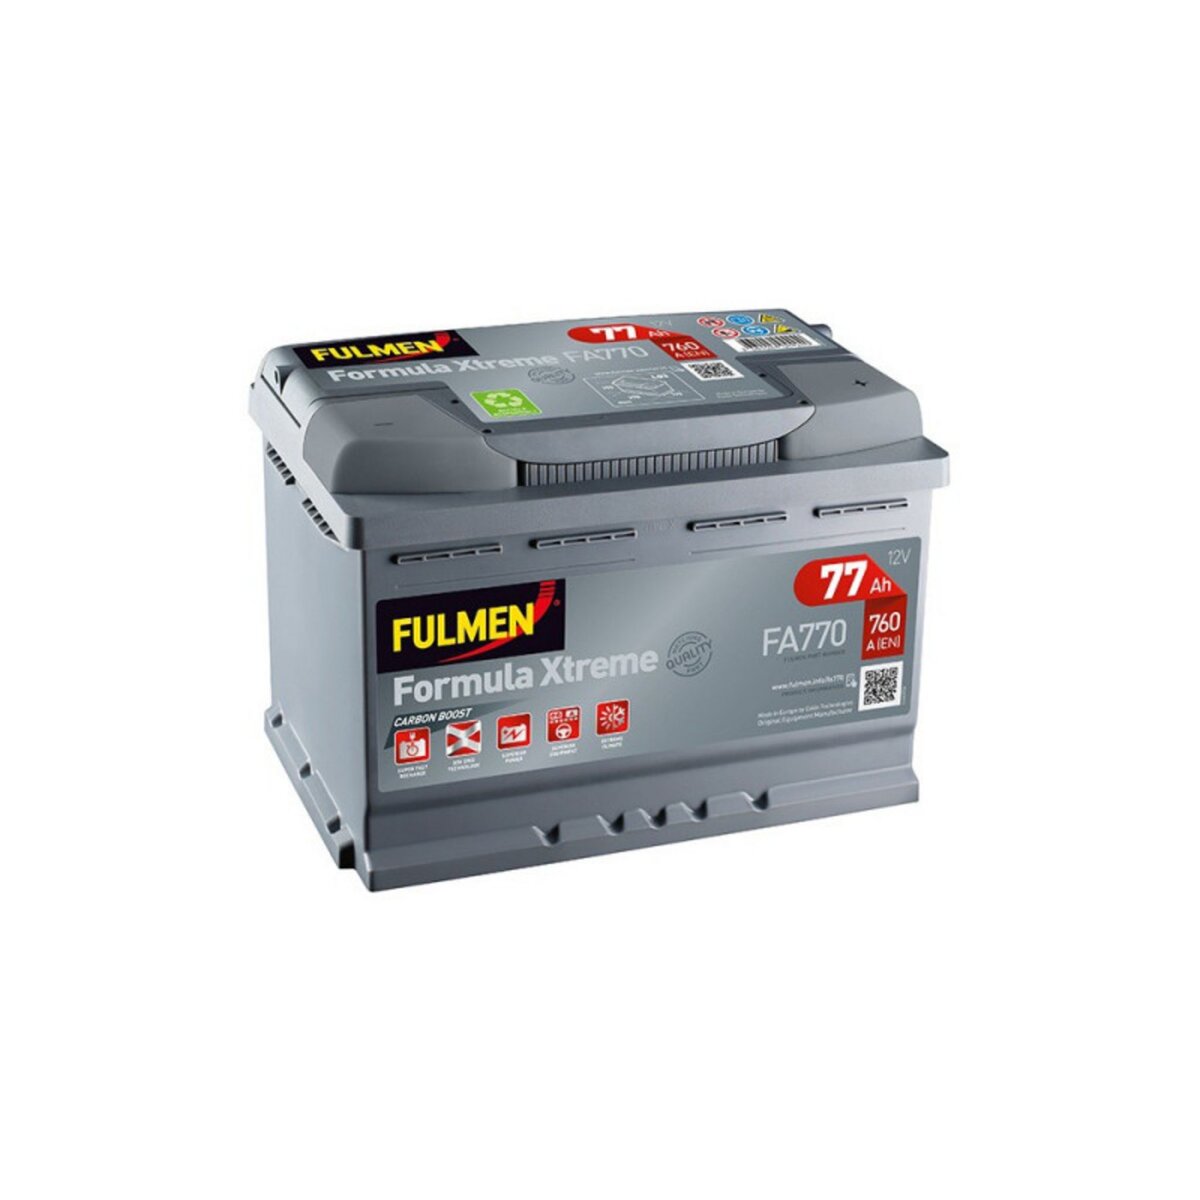 Fulmen - Batterie voiture FULMEN Formula Xtreme FA770 12V 77Ah 760A